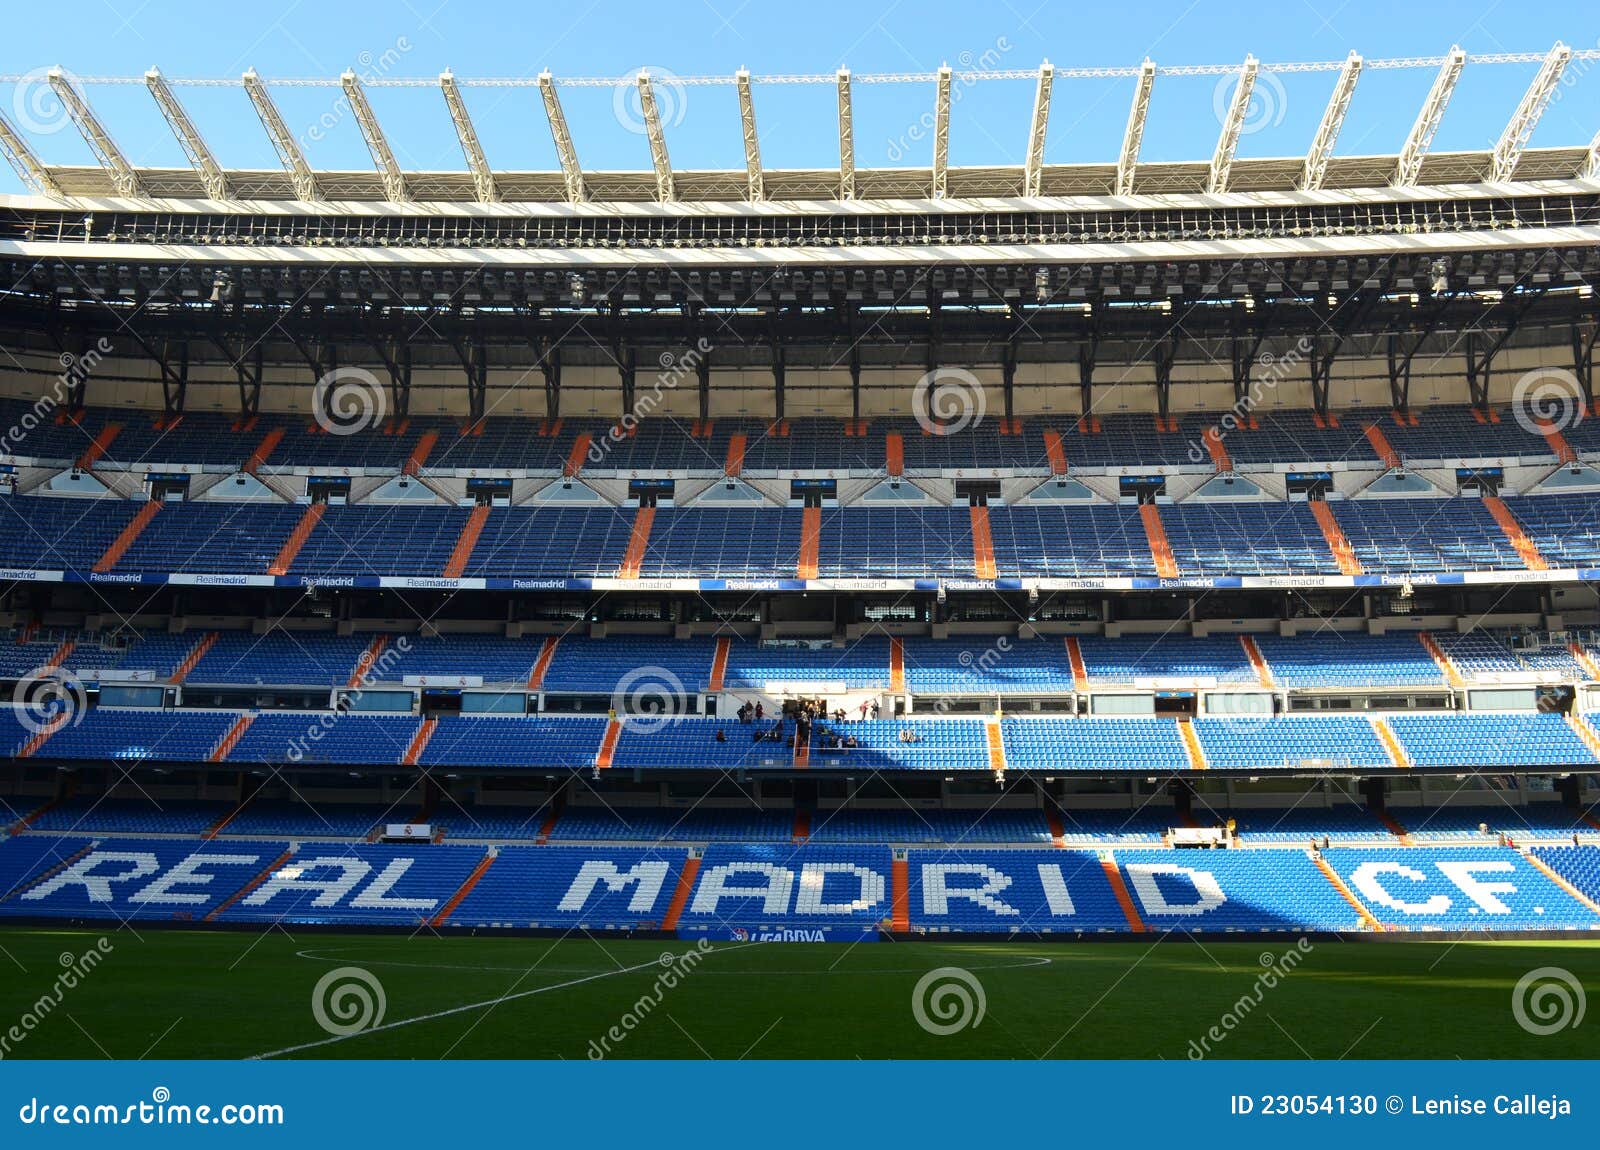 Real Madrid Stadium Spain Editorial Image Image 23054130